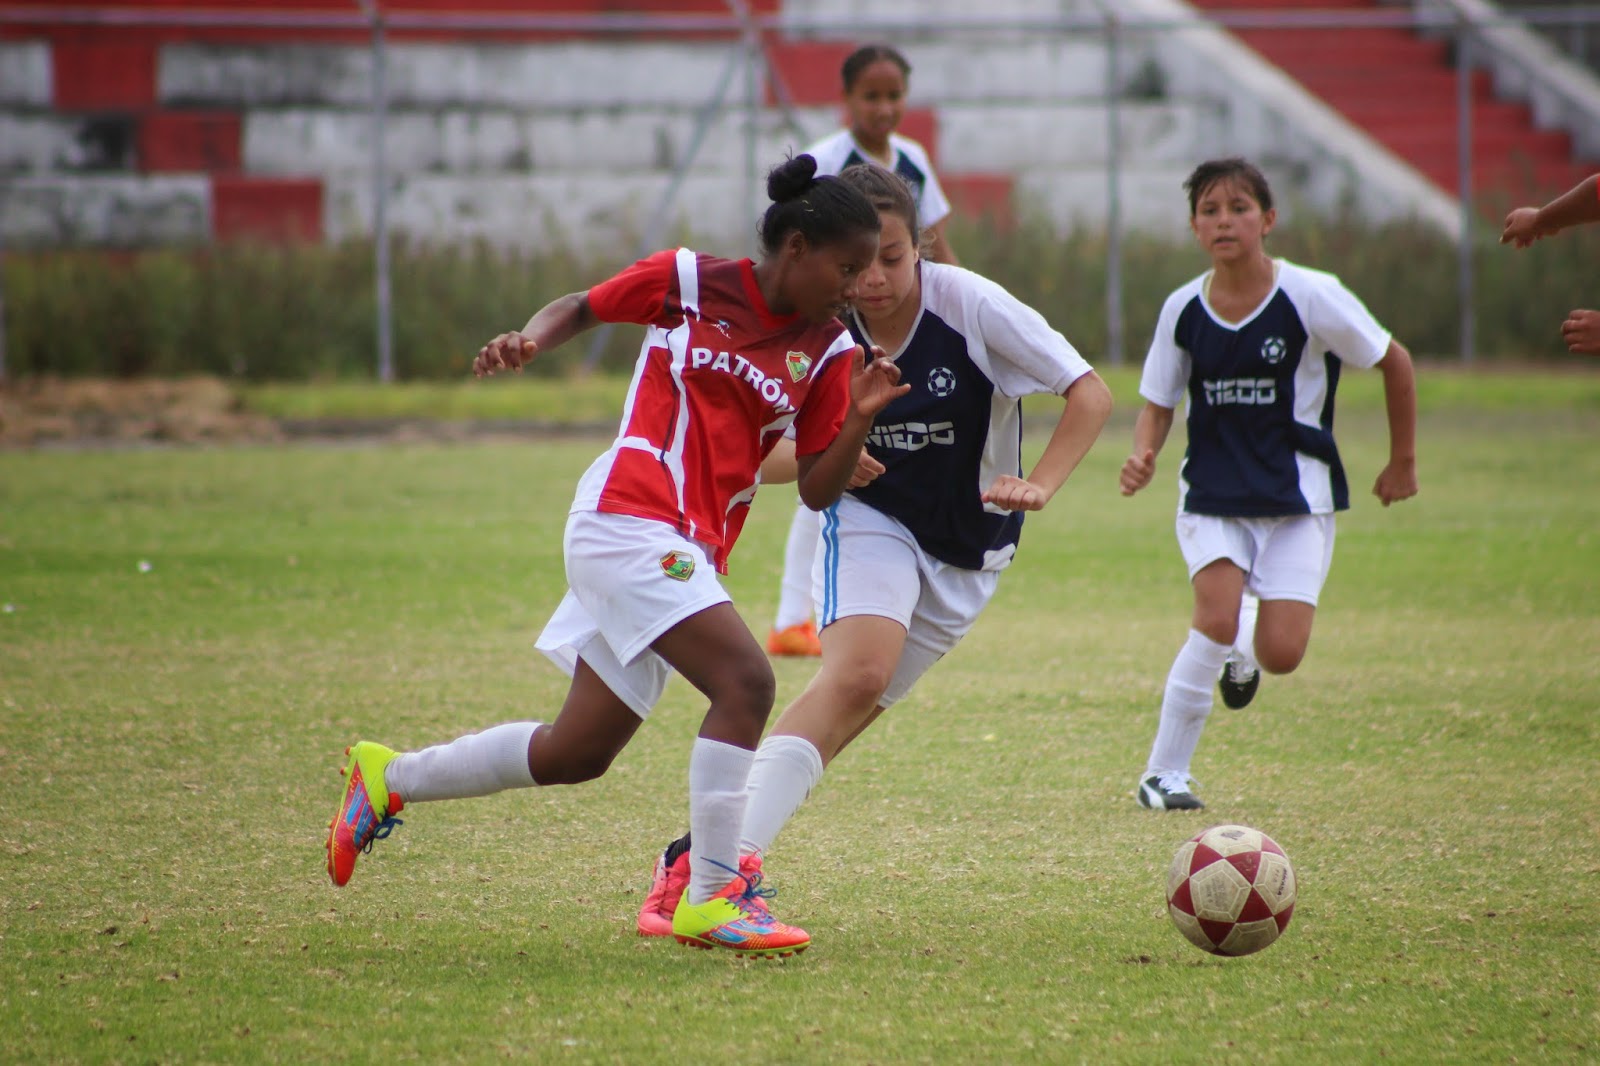 IDV inaugura su centro de alto rendimiento de fútbol femenino